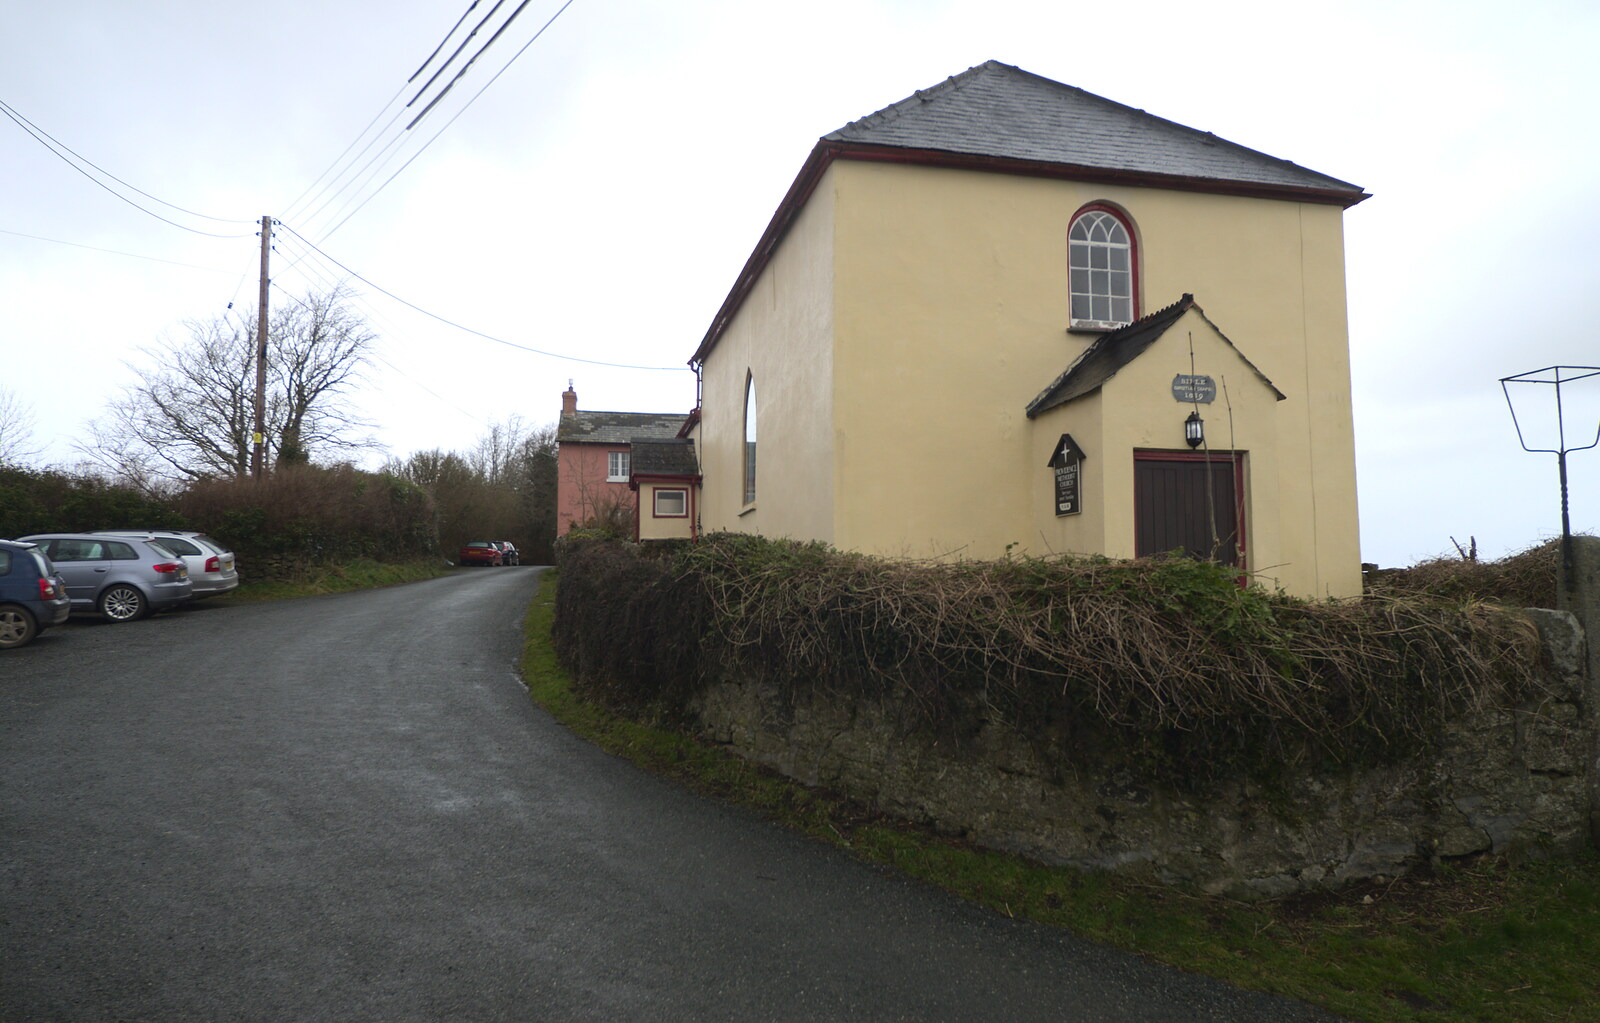 Providence chapel from A Trip to Grandma J's, Spreyton, Devon - 18th February 2015